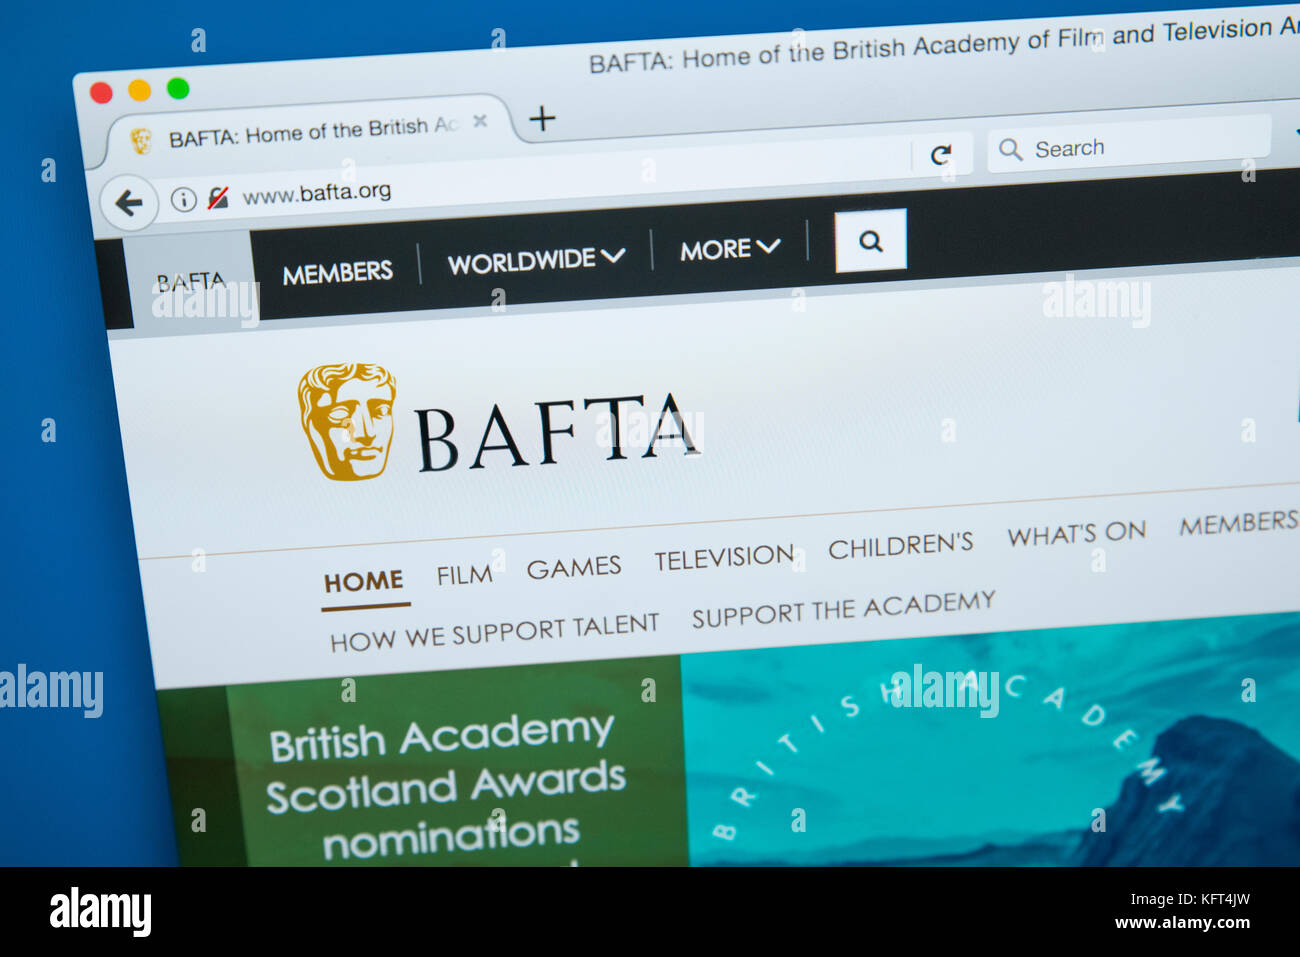 London, UK, 17. Oktober 2017: Die Homepage der offiziellen Website für den BAFTA-der Britischen Akademie für Film und Fernsehen, Kultur, am 17. Oktober 2017 Stockfoto